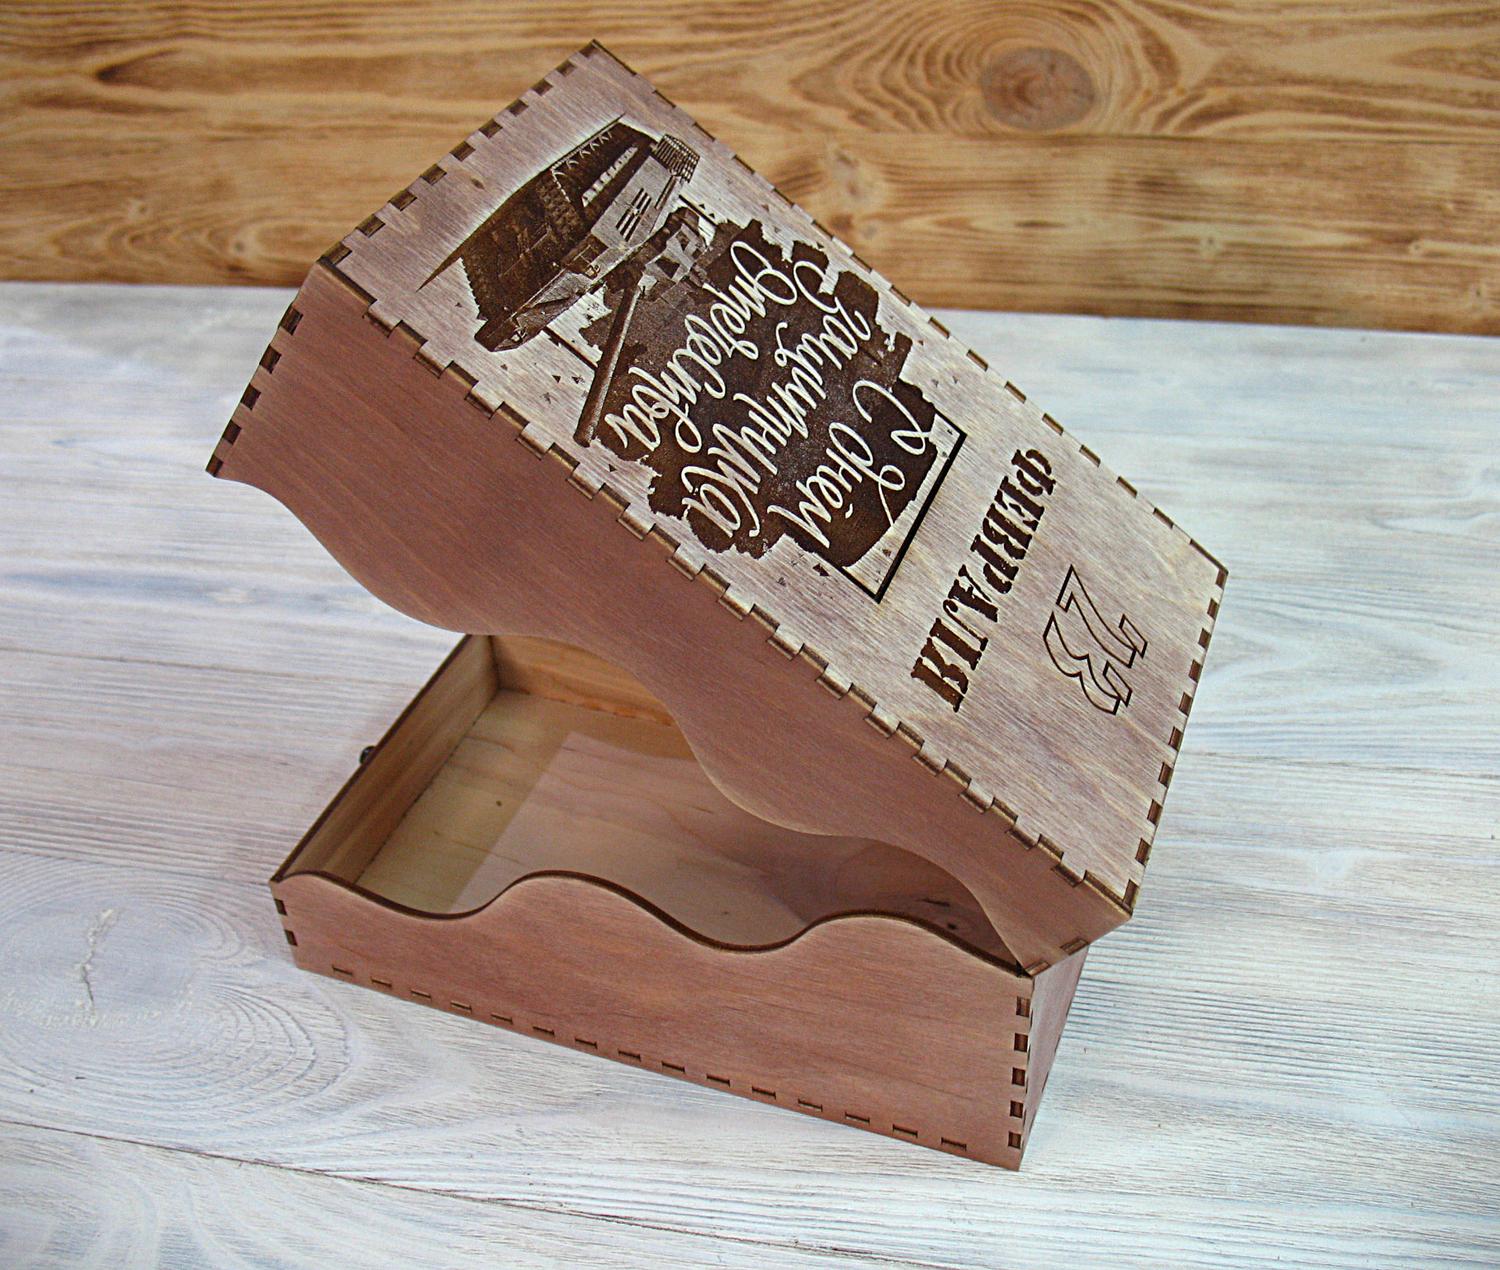 صندوق خشبي على شكل موجة مقطوعة بالليزر